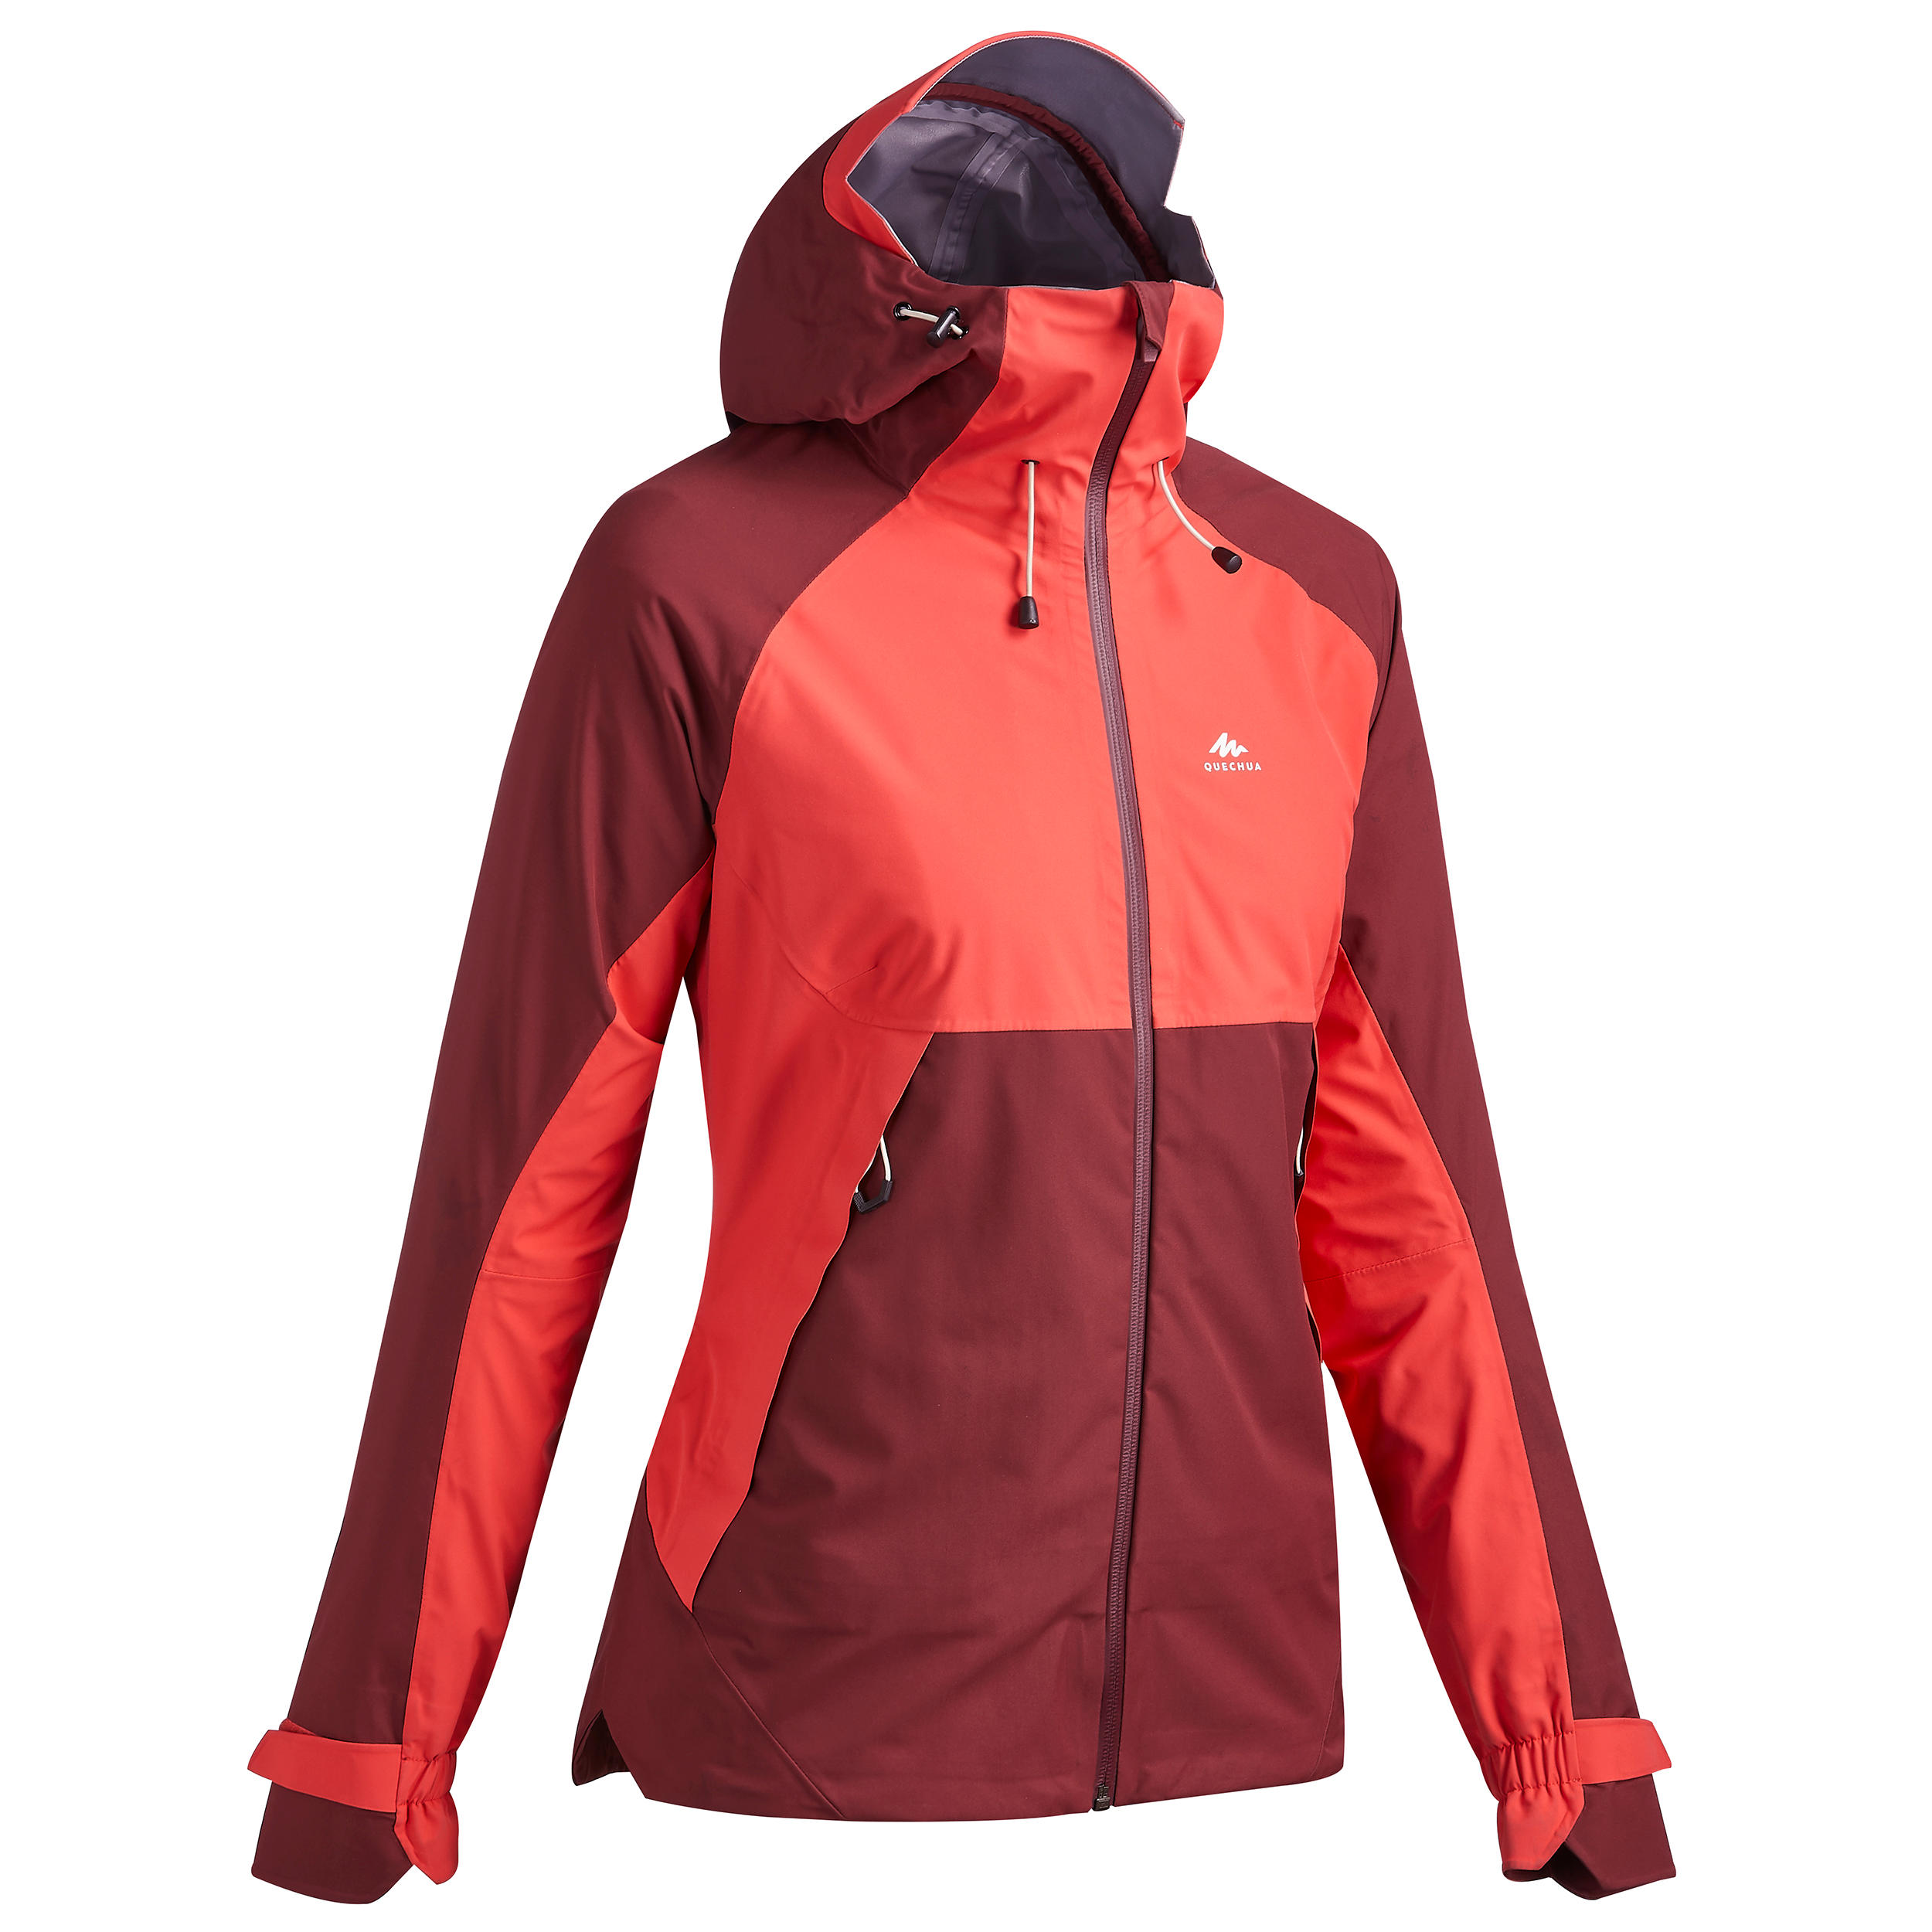 Manteau de randonnée imperméable femme – MH 500 - QUECHUA